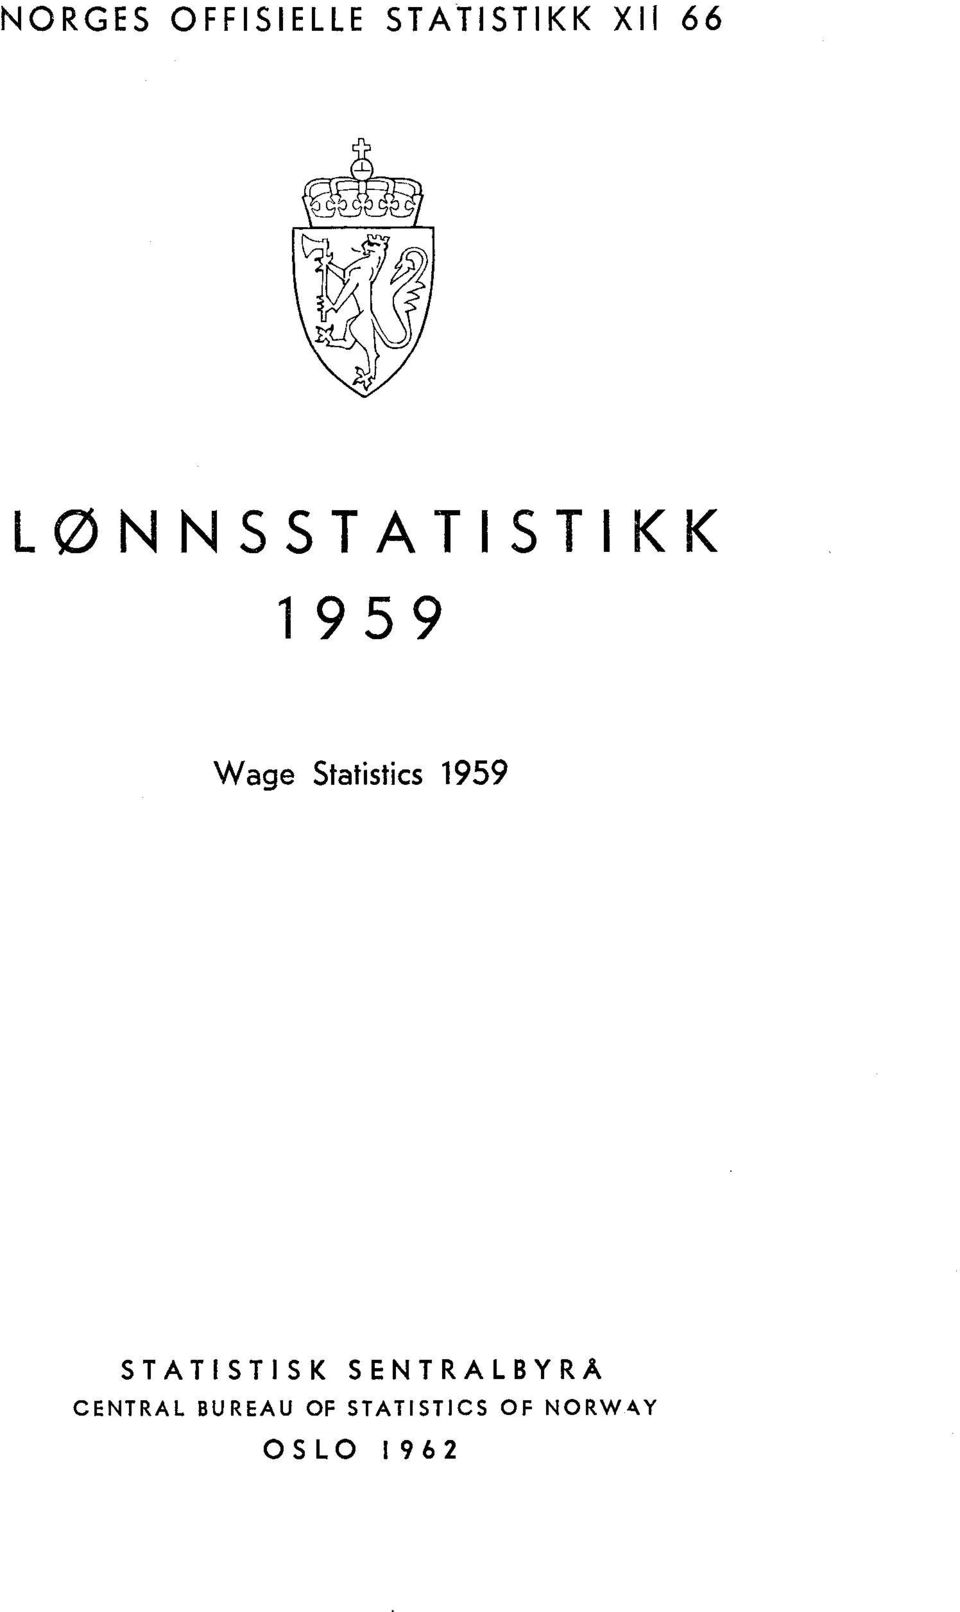 1959 STATISTISK SENTRALBYRÅ CENTRAL